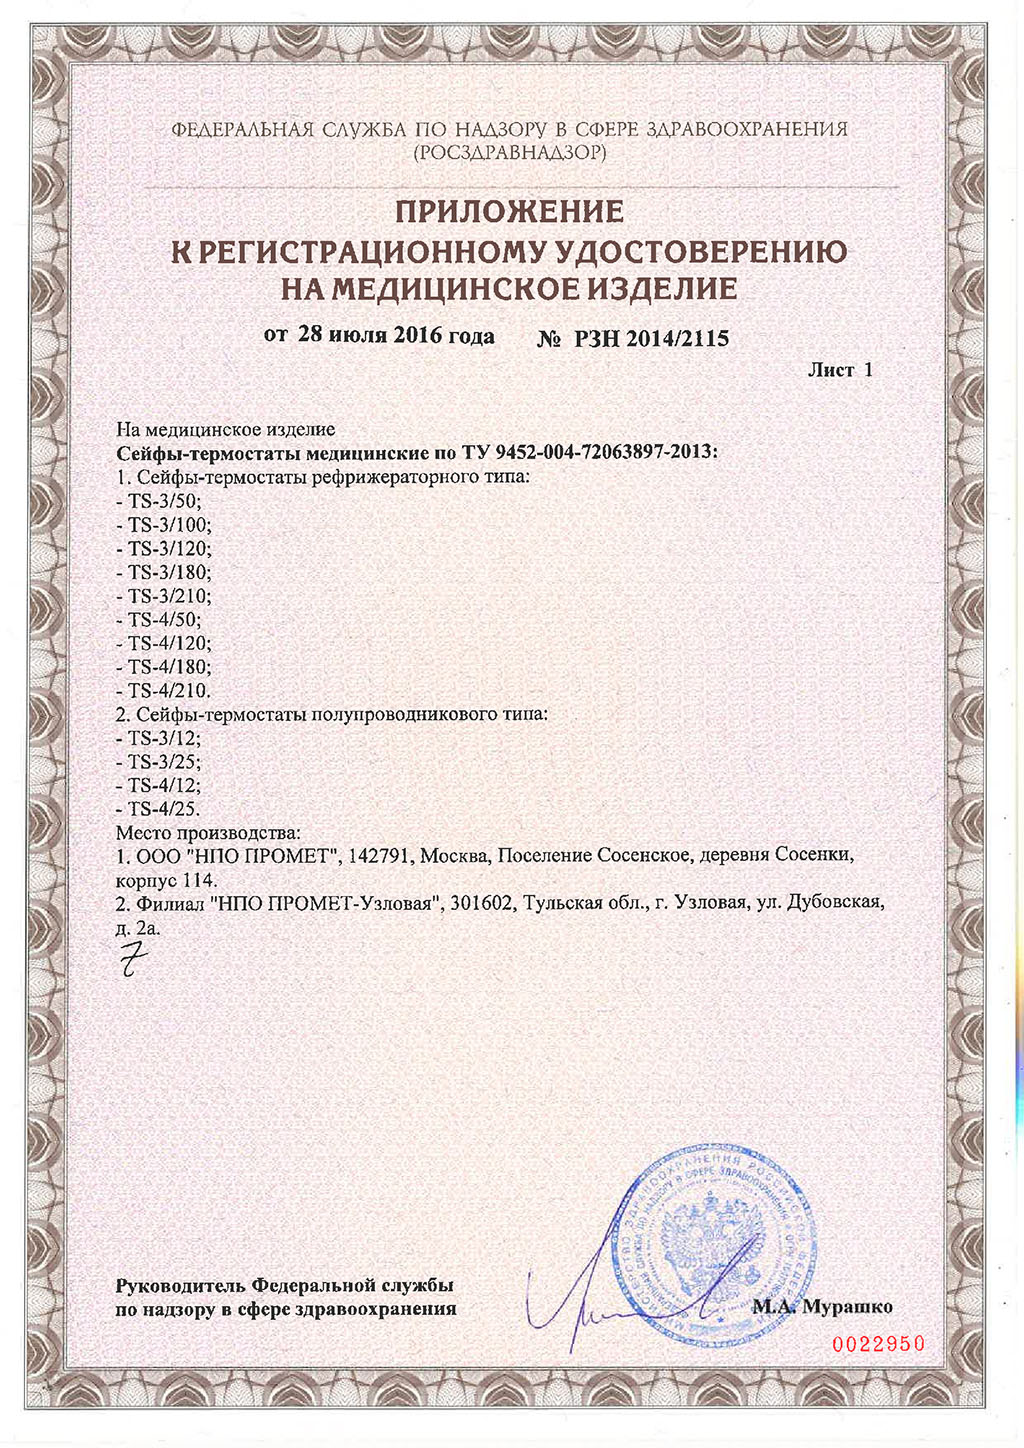 Pегистрационное-удостоверение-на-Сейфы-термостаты-2